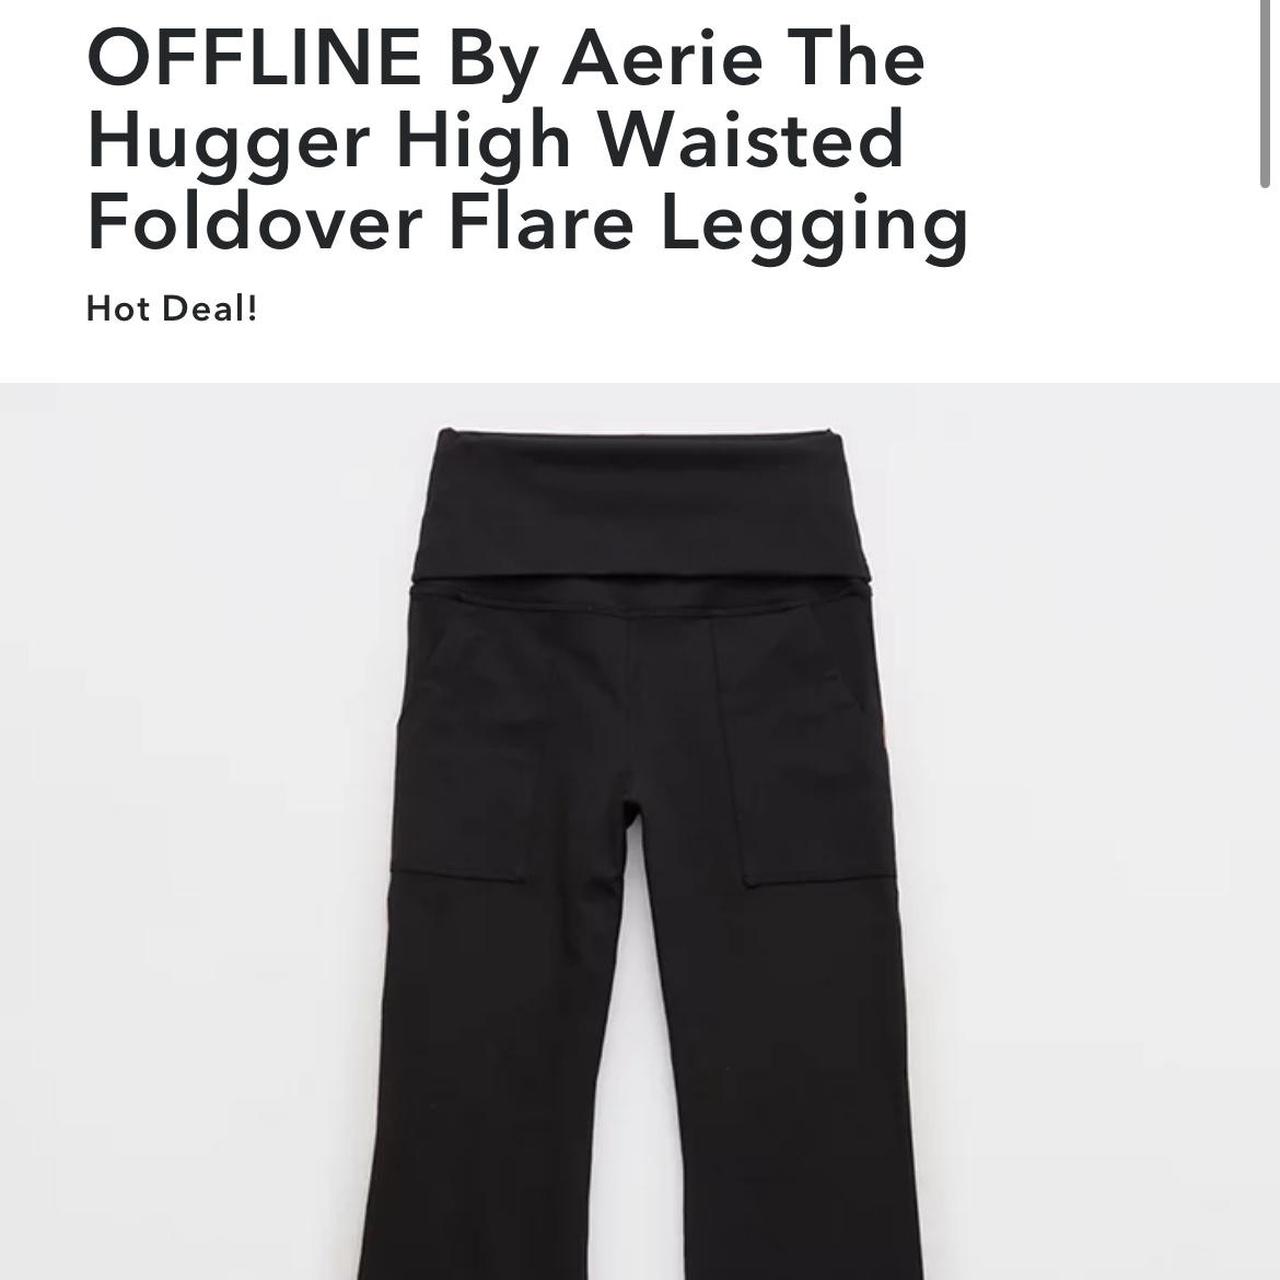 OFFLINE By Aerie The Hugger High Waisted Foldover Flare Legging